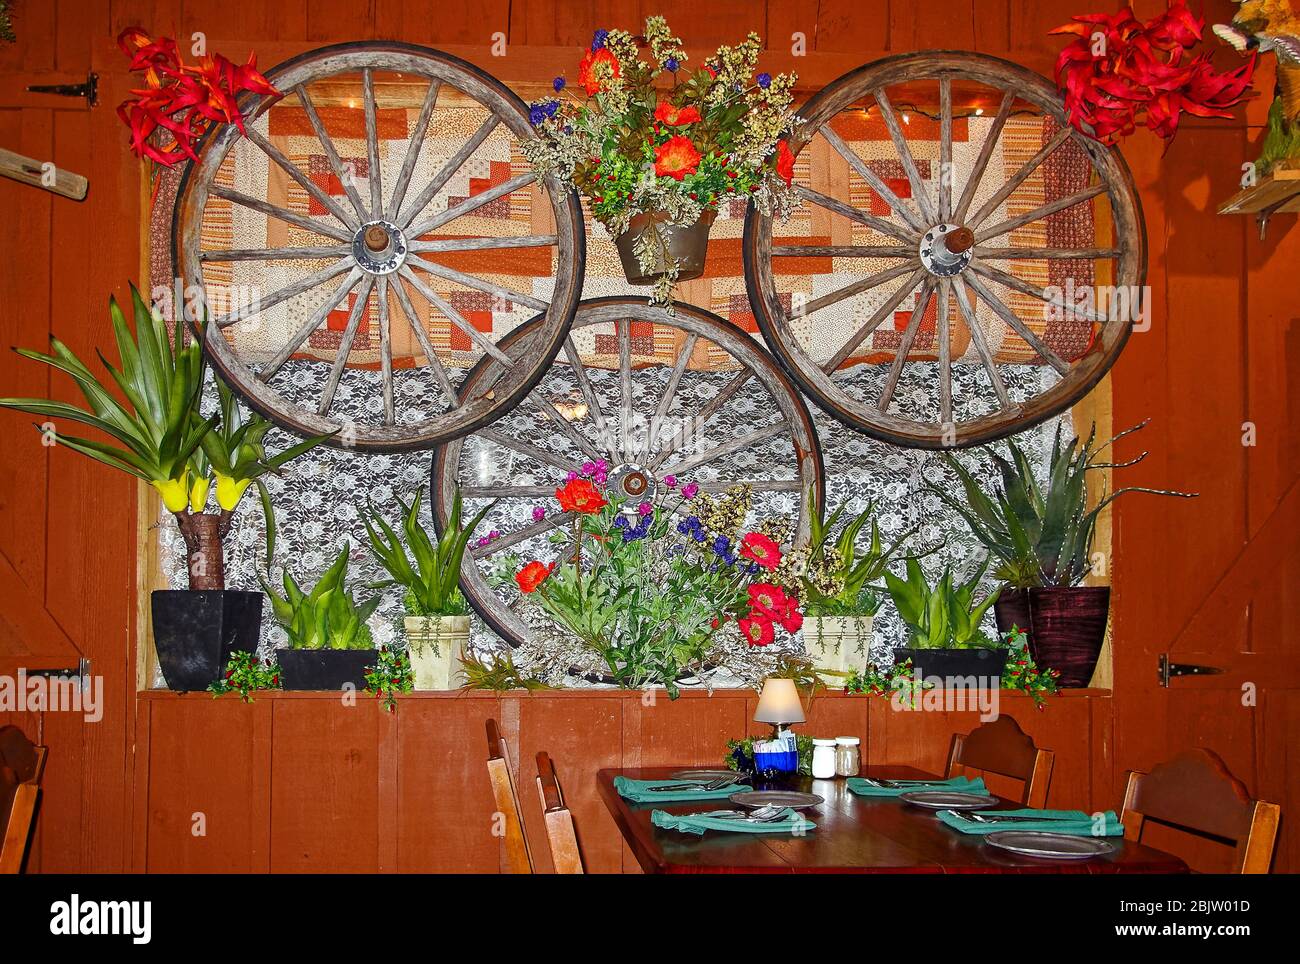 Traitement décoratif des fenêtres, éclectique, 3 roues de wagon, plantes en pots, fleurs artificielles, courtepointe, dentelle, table, restaurant, établissement de Patti dans les années 1880 Banque D'Images